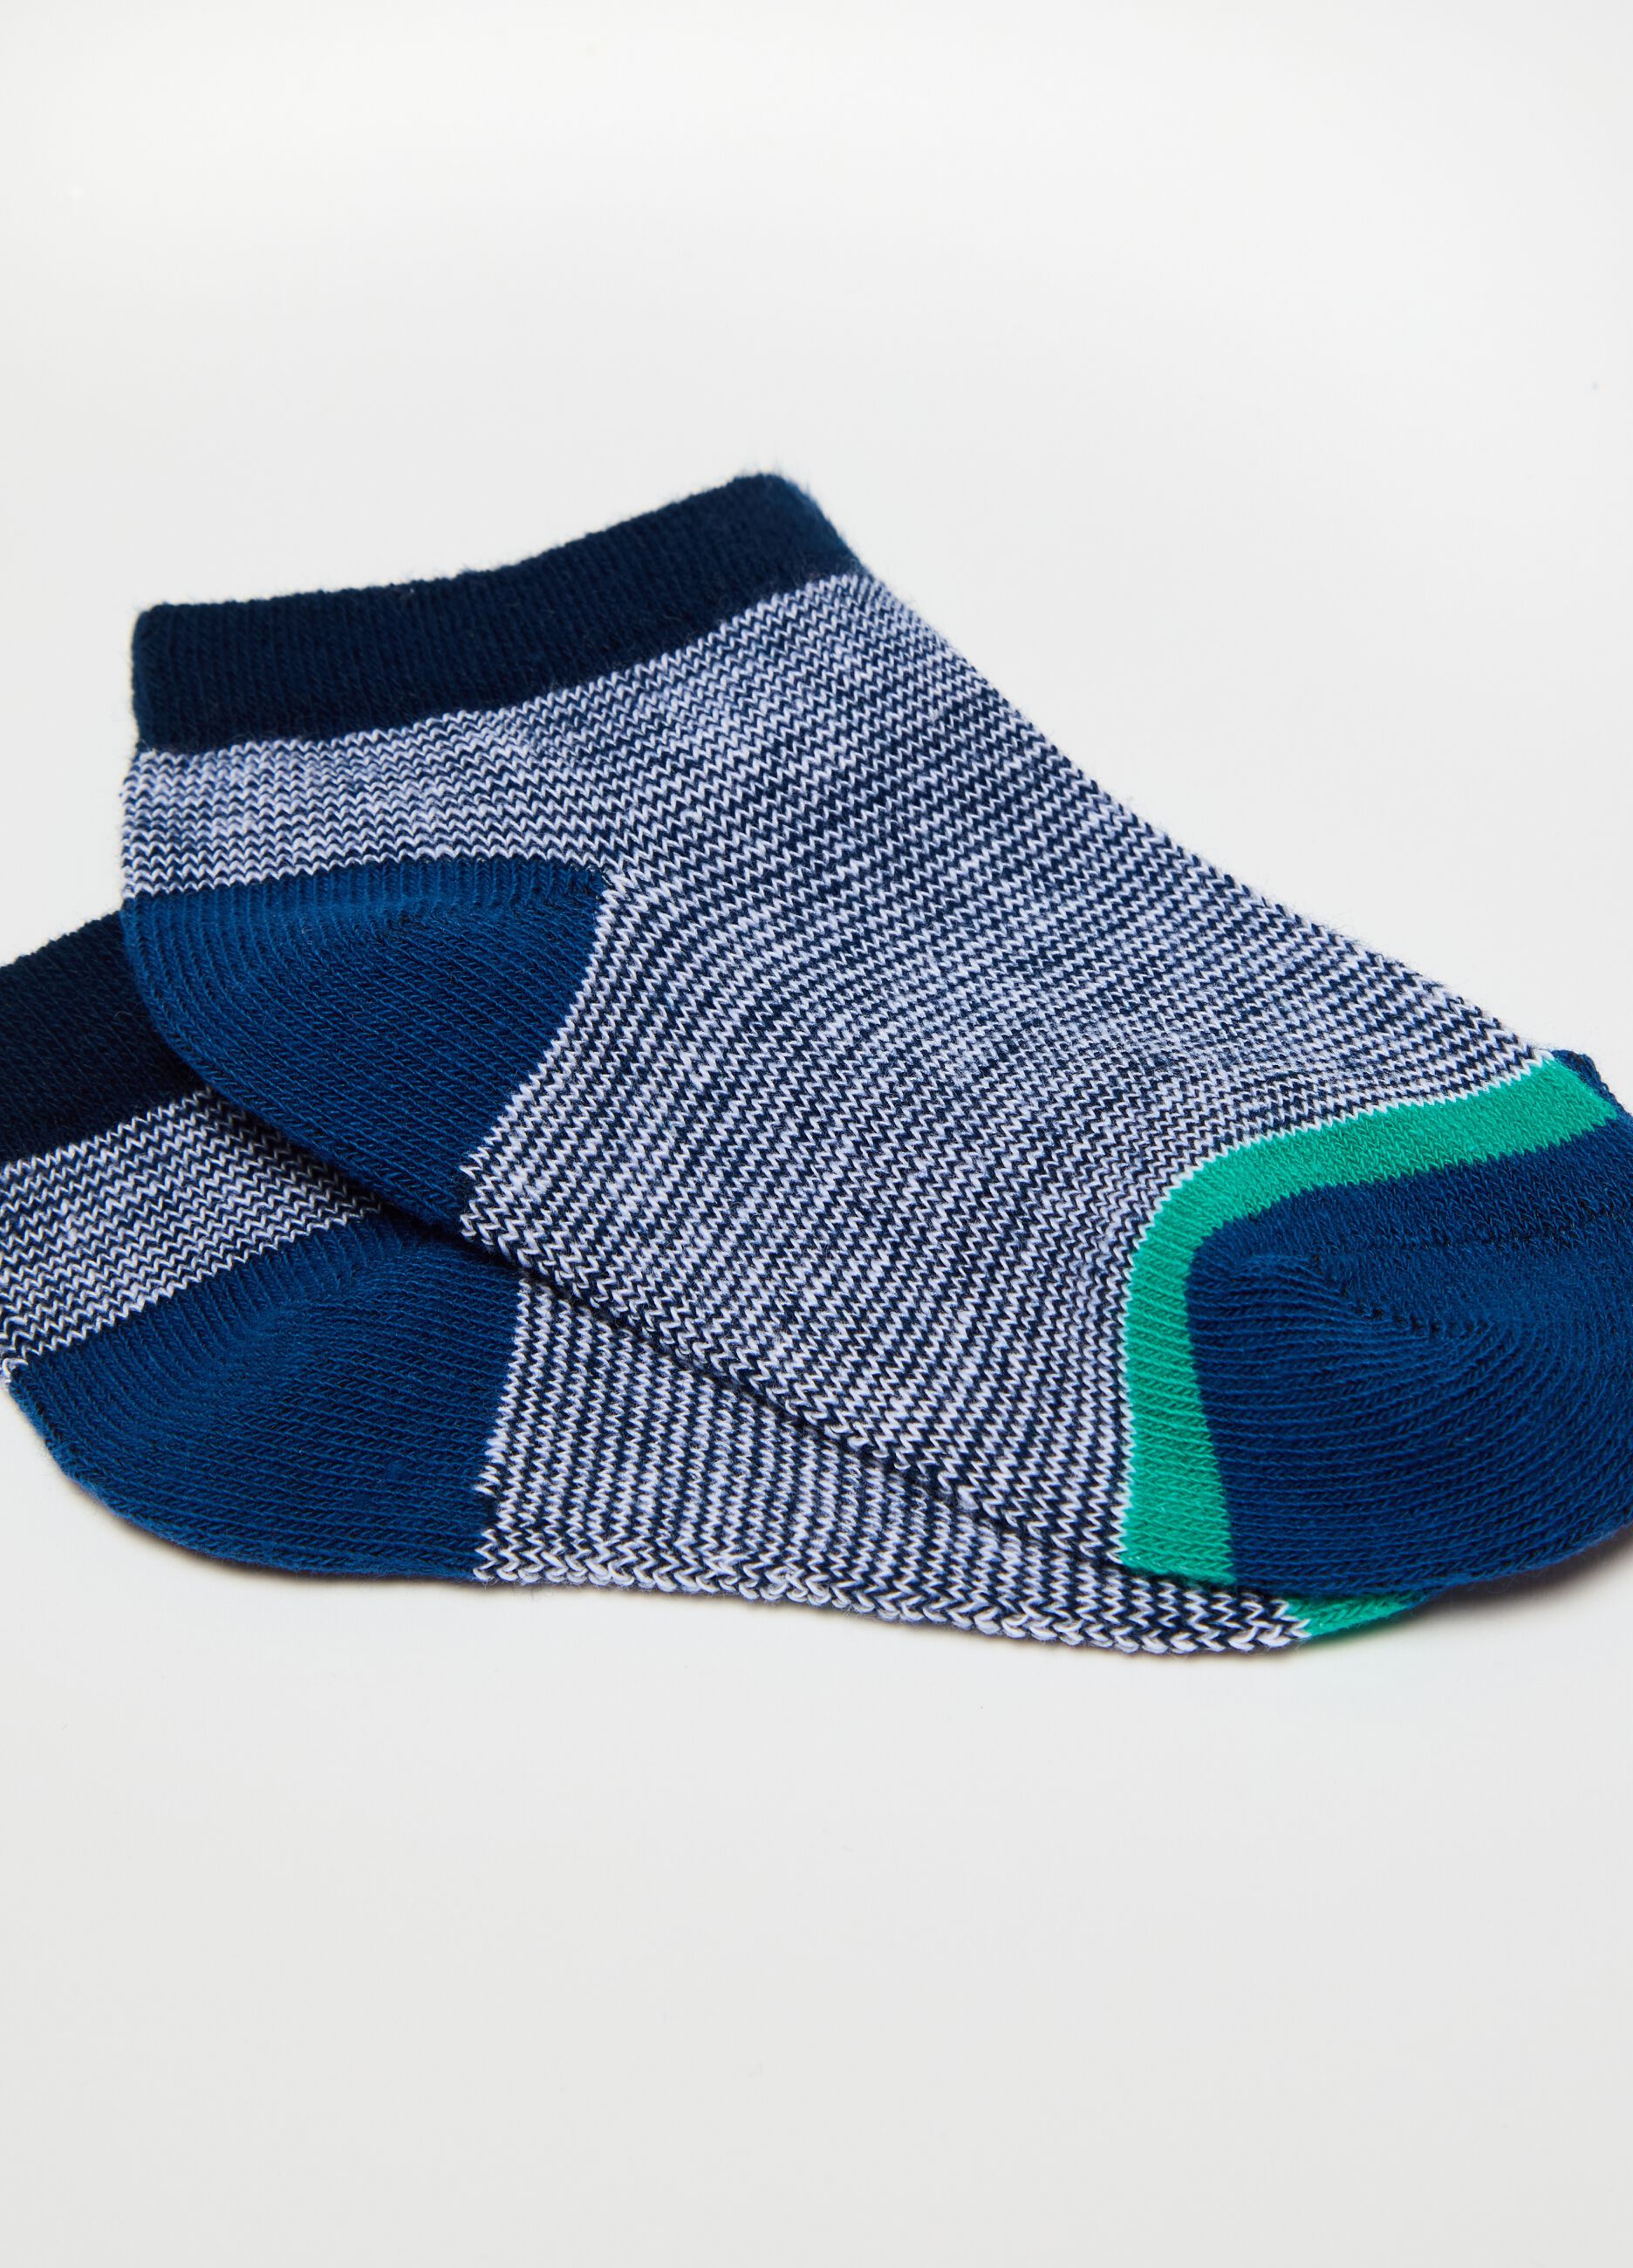 Multipack siete calcetines cortos estampado de rayas